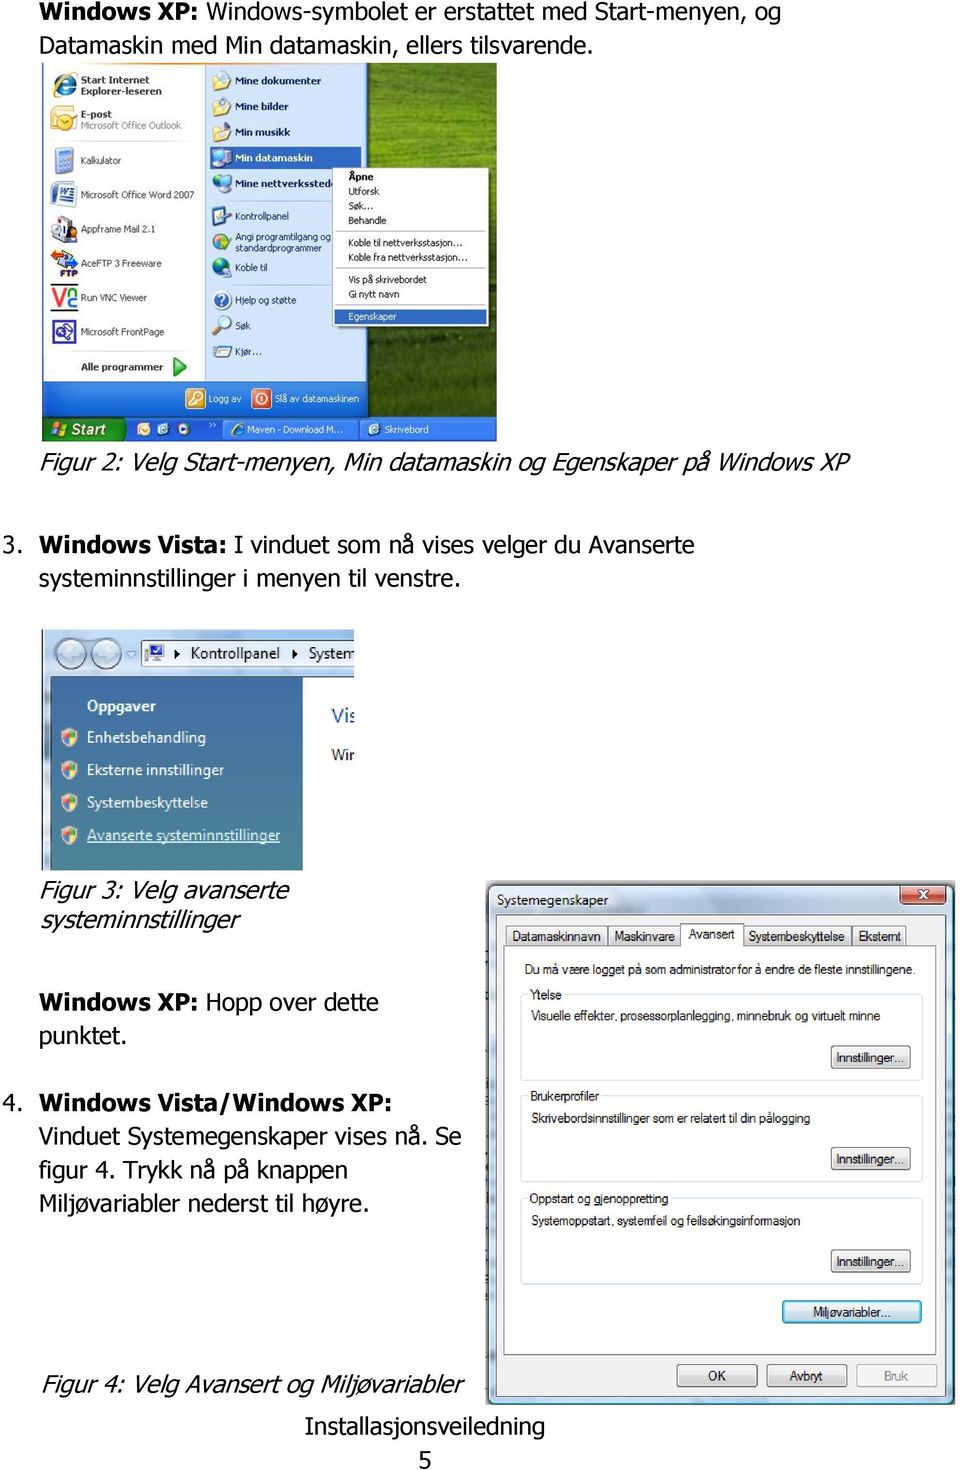 Windows Vista: I vinduet som nå vises velger du Avanserte systeminnstillinger i menyen til venstre.